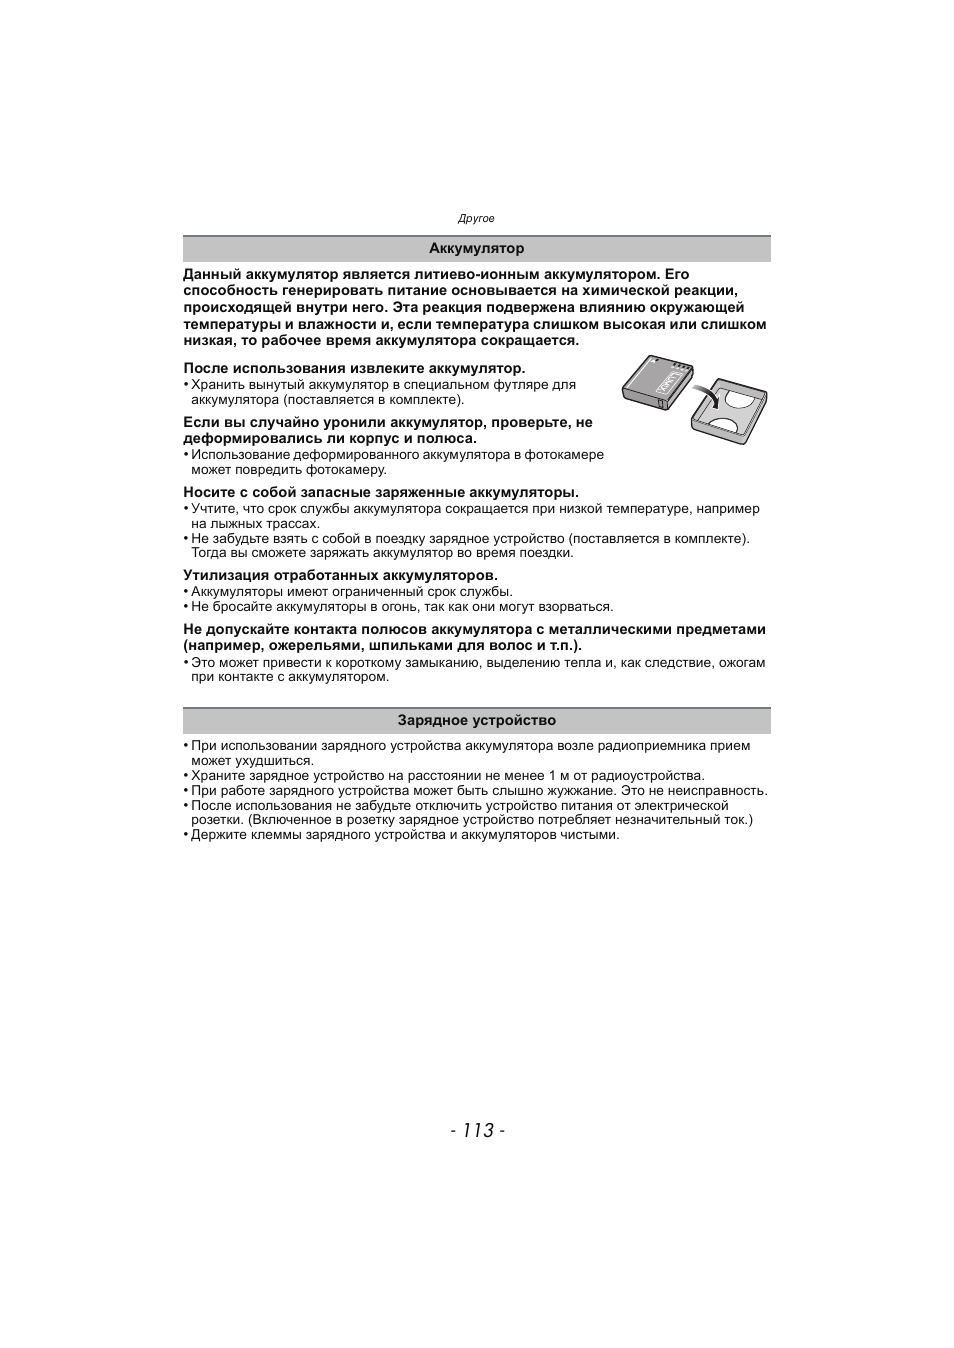 Инструкция по эксплуатации Panasonic KX-MC6020 | Страница 113 / 130